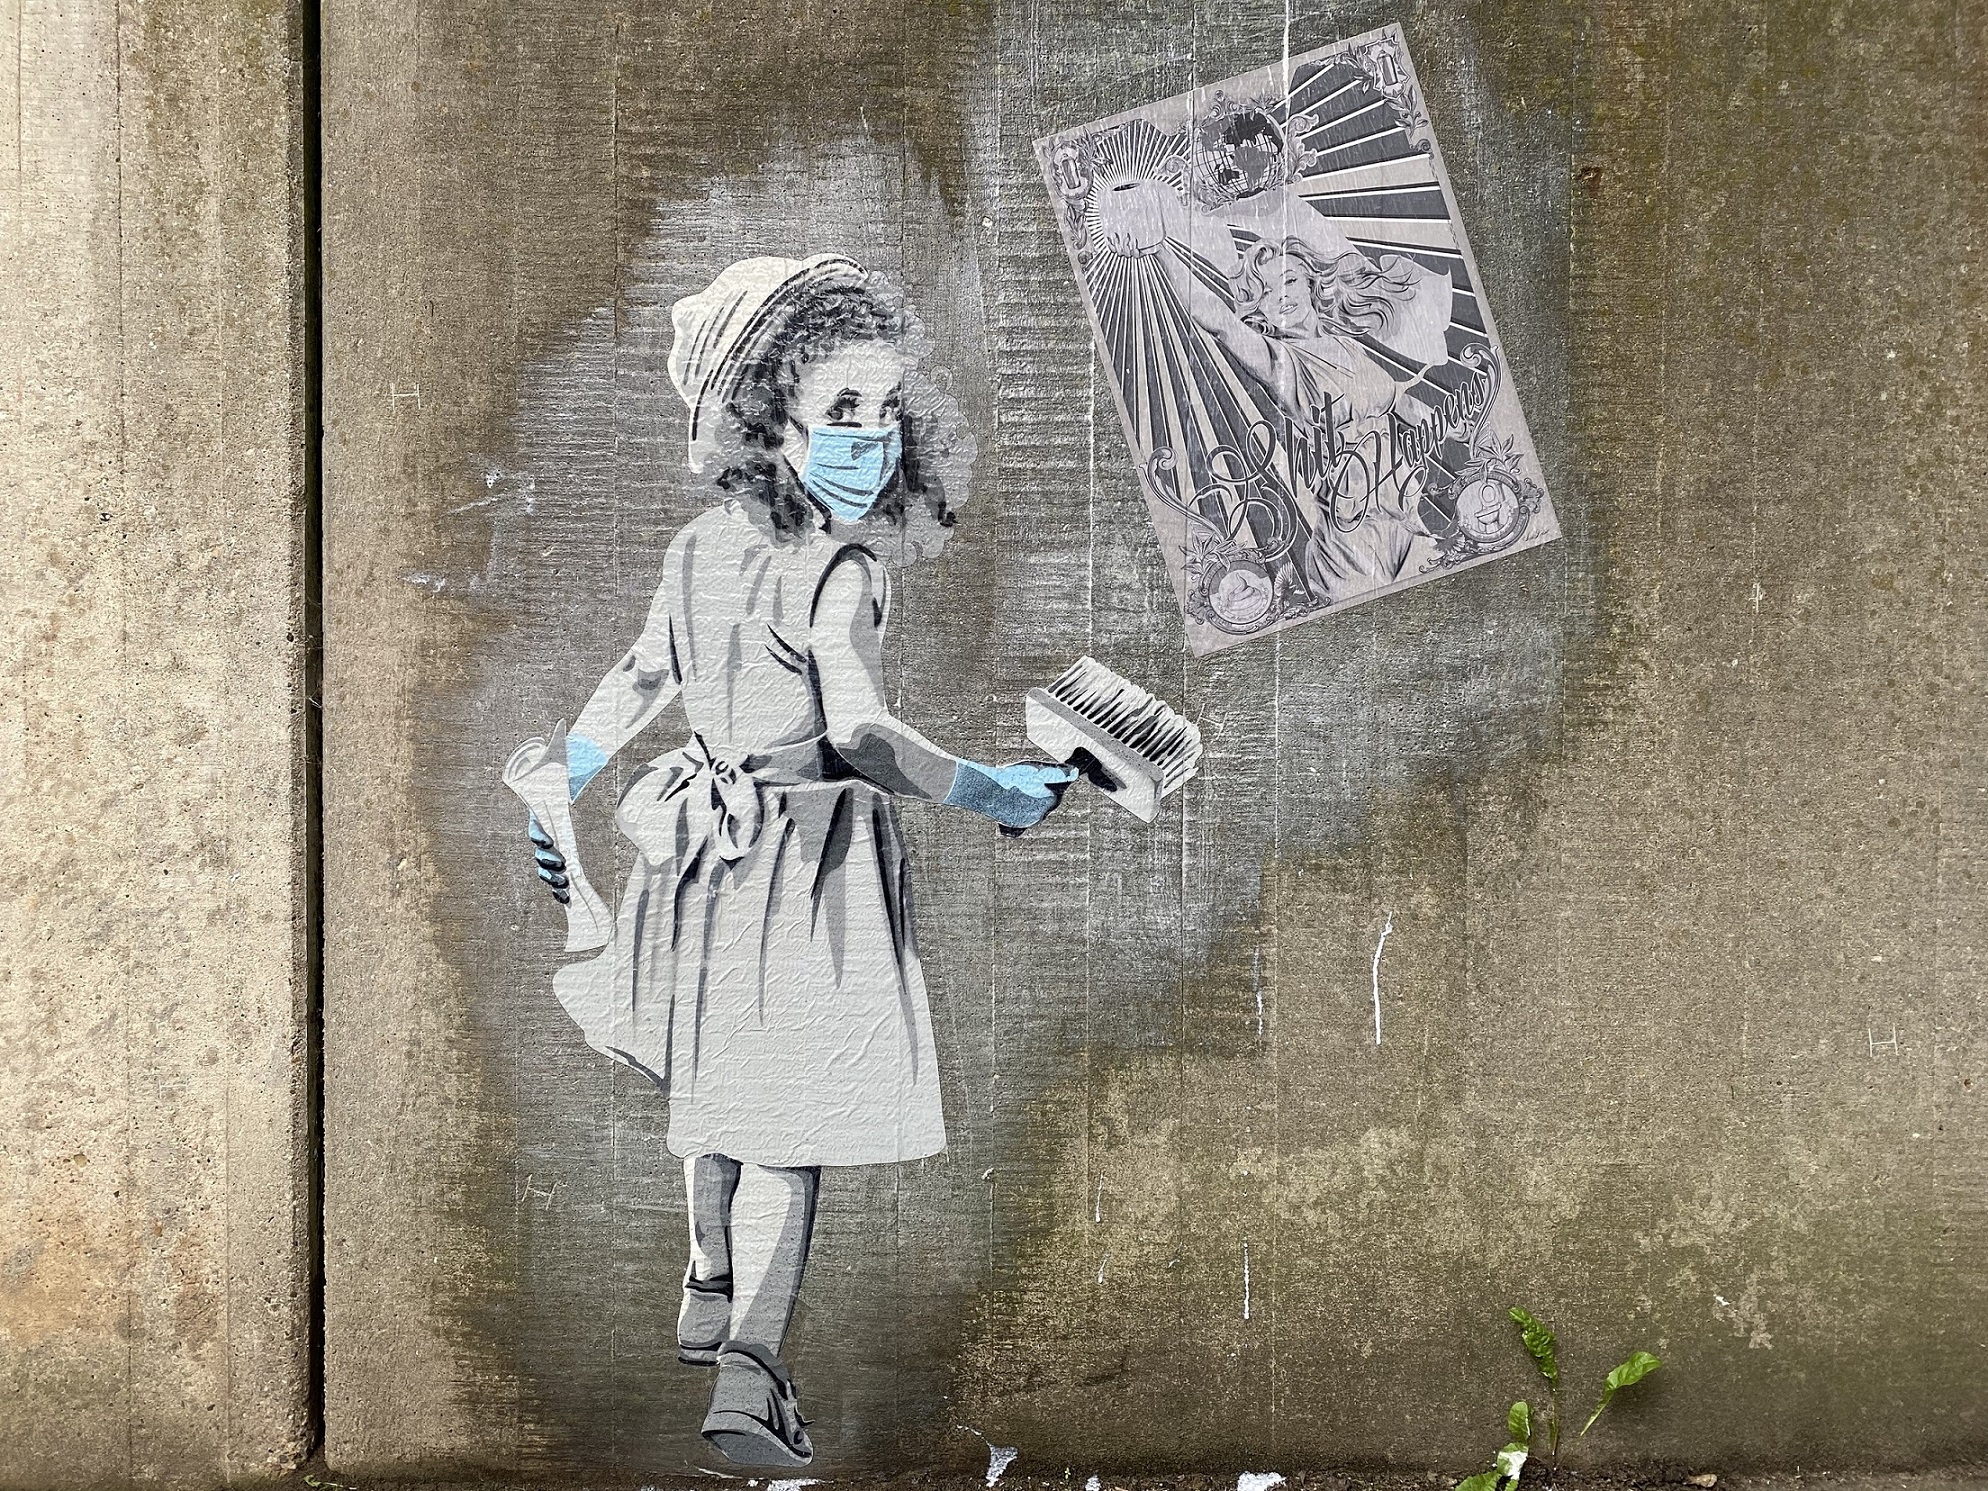 Street Art Kunstwerk angebracht auf einer Betonmauer. Zu sehen ist ein in schwarz weiß Schema gehaltenes Mädchen, welches ein Plakat an eine Wand kleistert. Das Mädchen trägt akzentuiert einen hellblauen Mundschutz und hellblaue Handschuhe.